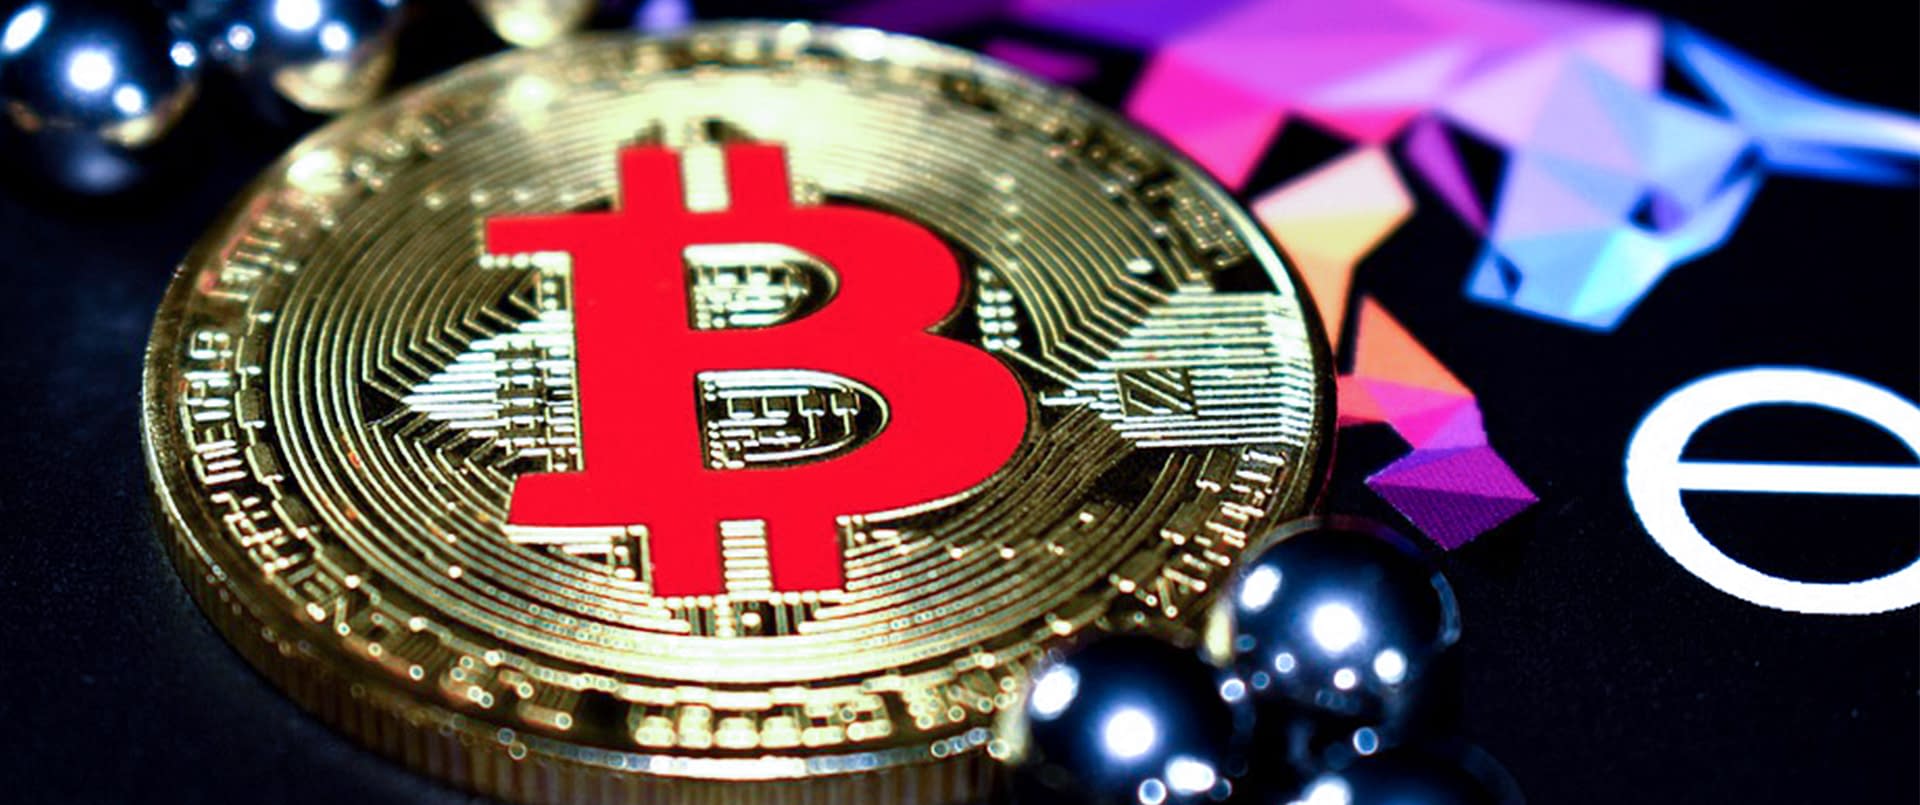 Bitcoin trading coinbase макател форум